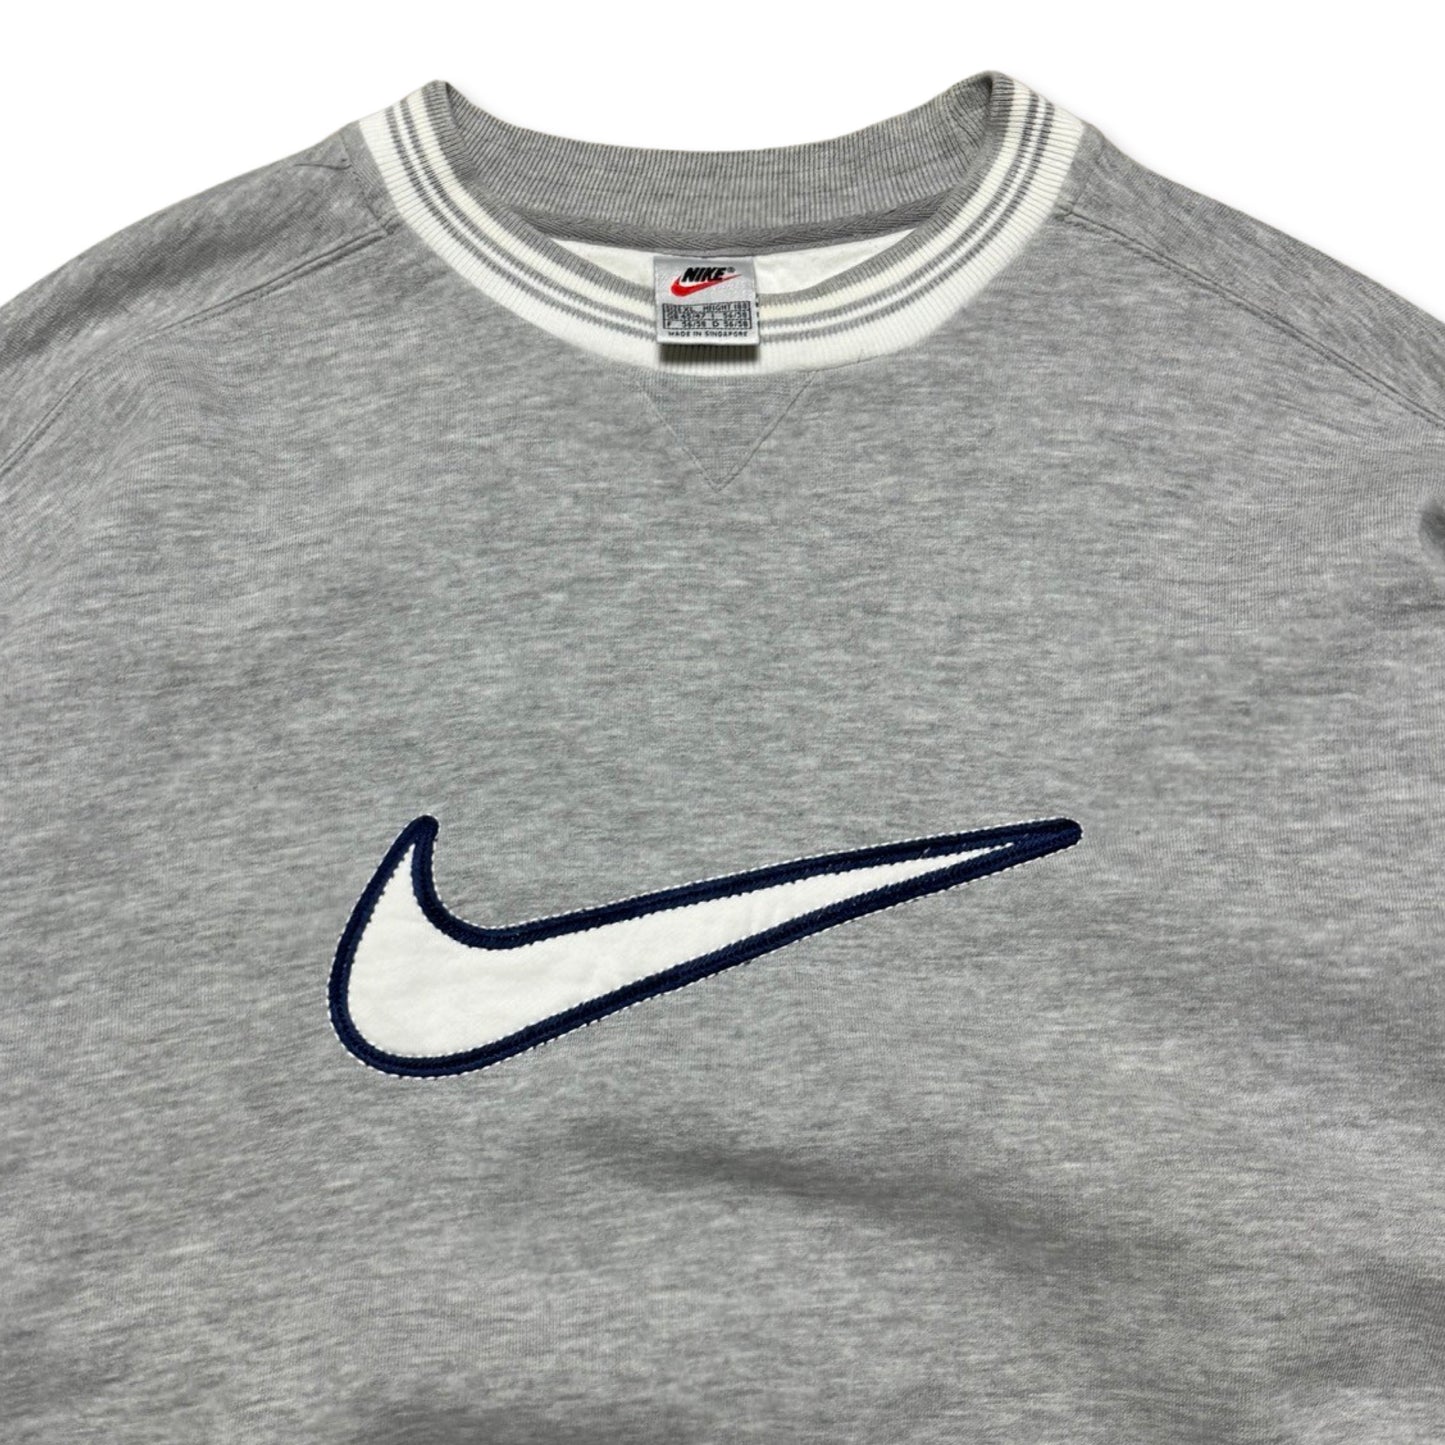 Vintage 90s Nike Swoosh Sweatshirt (Xlarge)